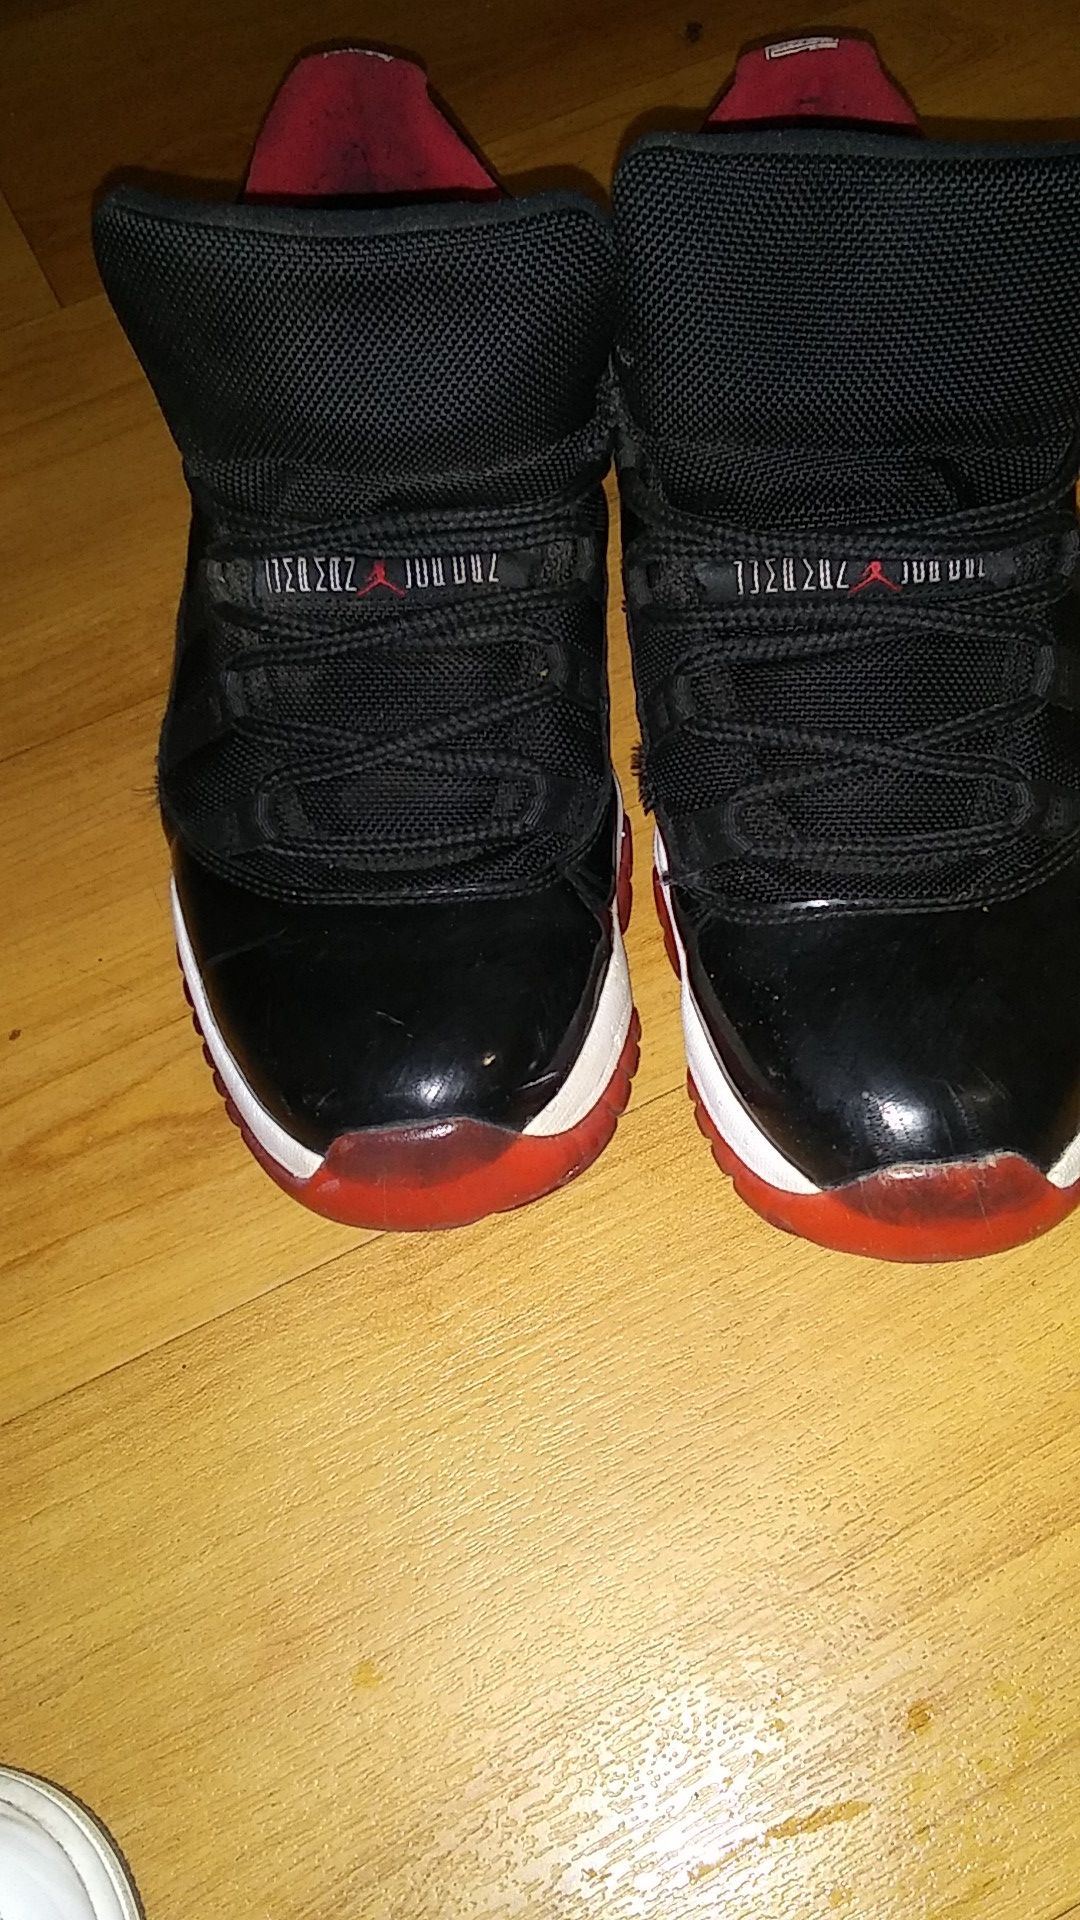 Black, Red, and White Jordans